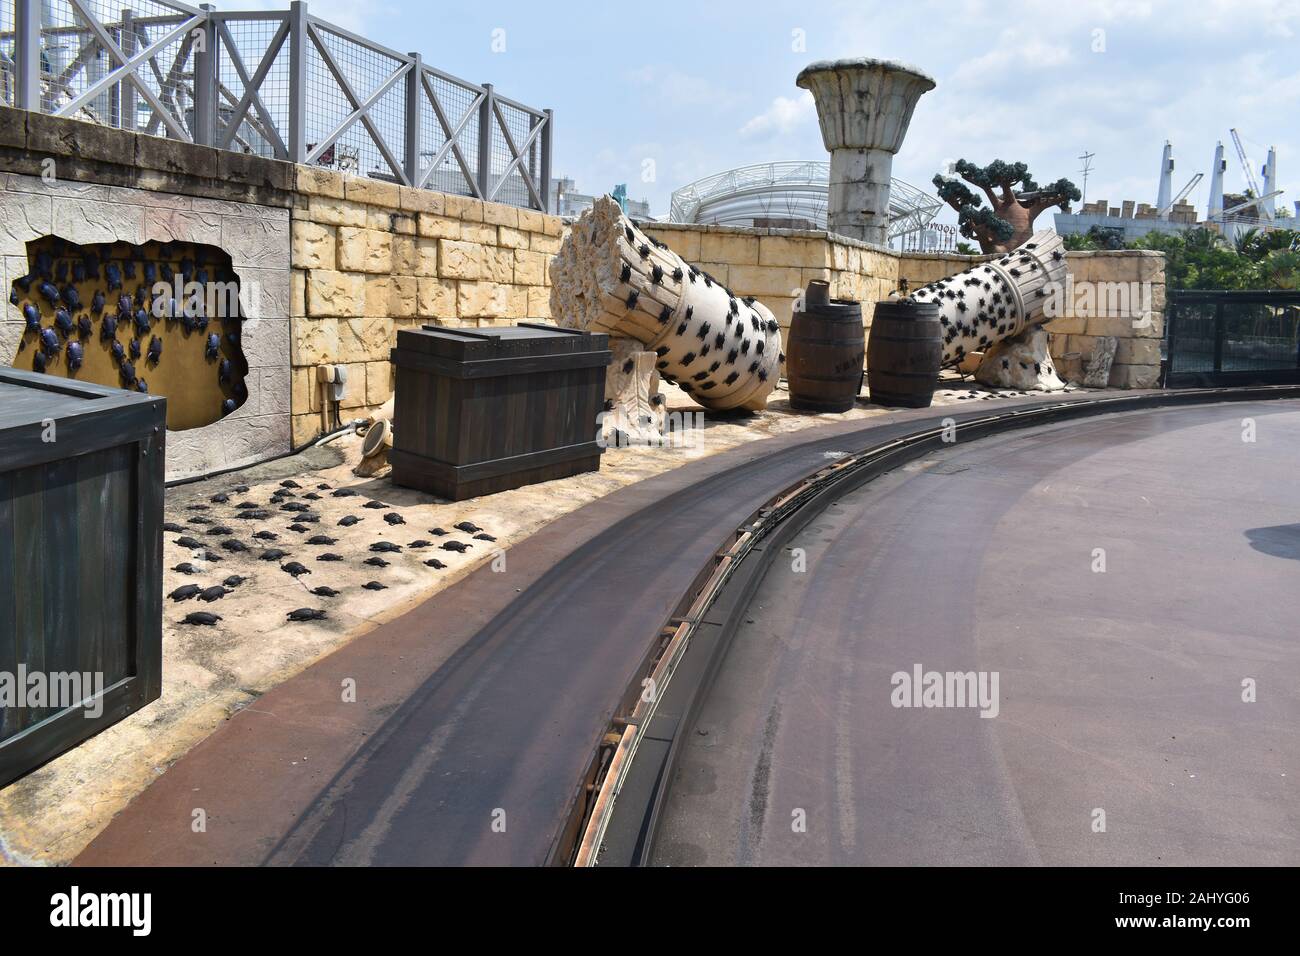 Universal Studios Singapore, Asia, 11 agosto 2019: Diversi Scorpios su roccia arrotondata con strada vuota Foto Stock